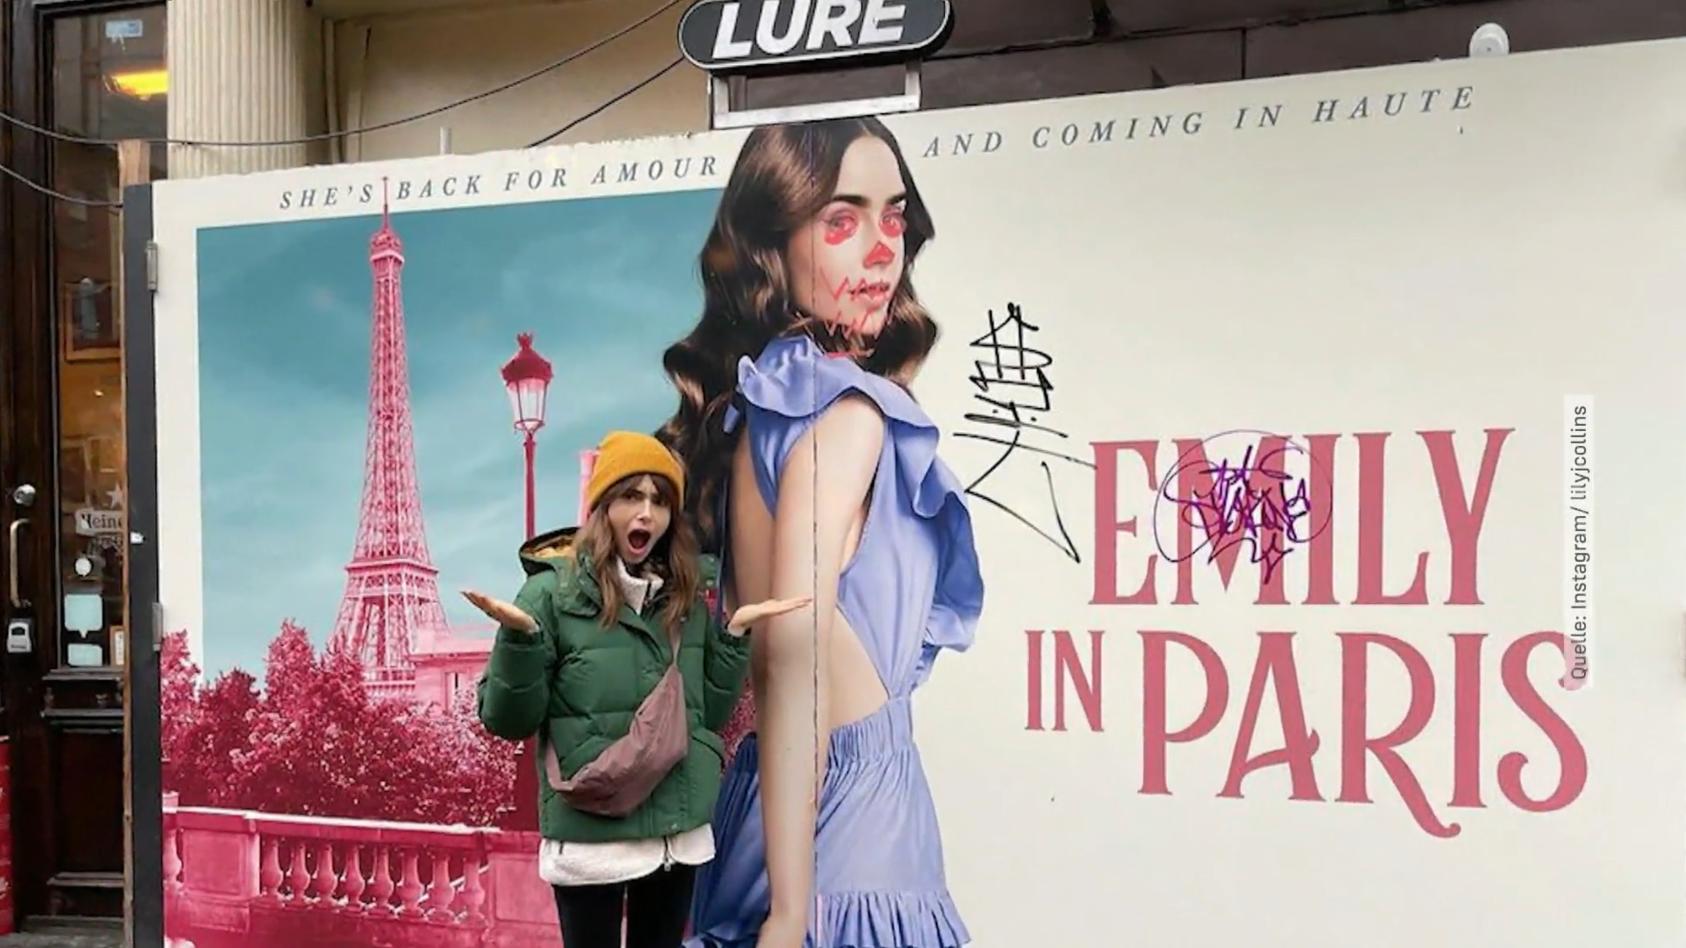 Sie entdeckt ein verunstaltetes "Emily in Paris"-Plakat Lily Collins